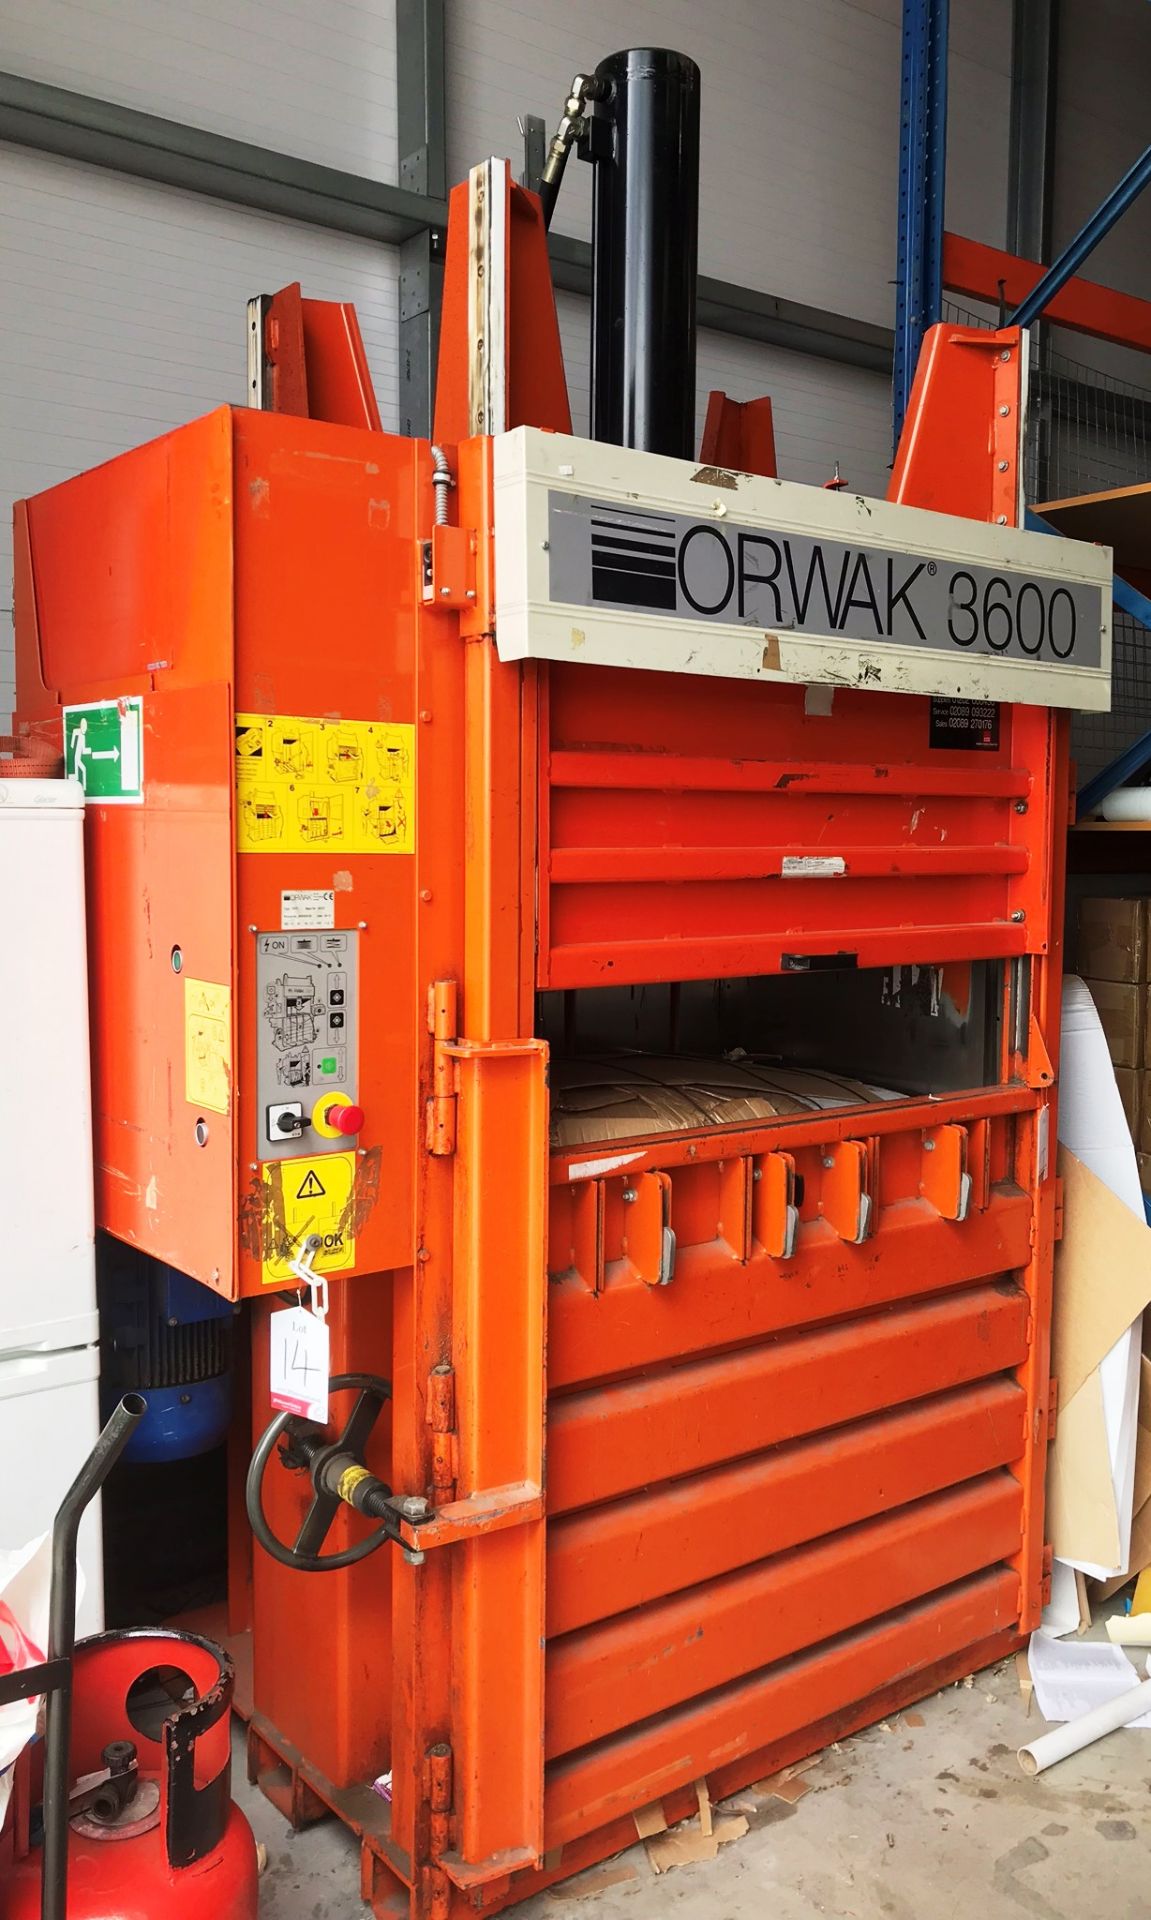 Orwak 3600 Industrial Vertical Baler